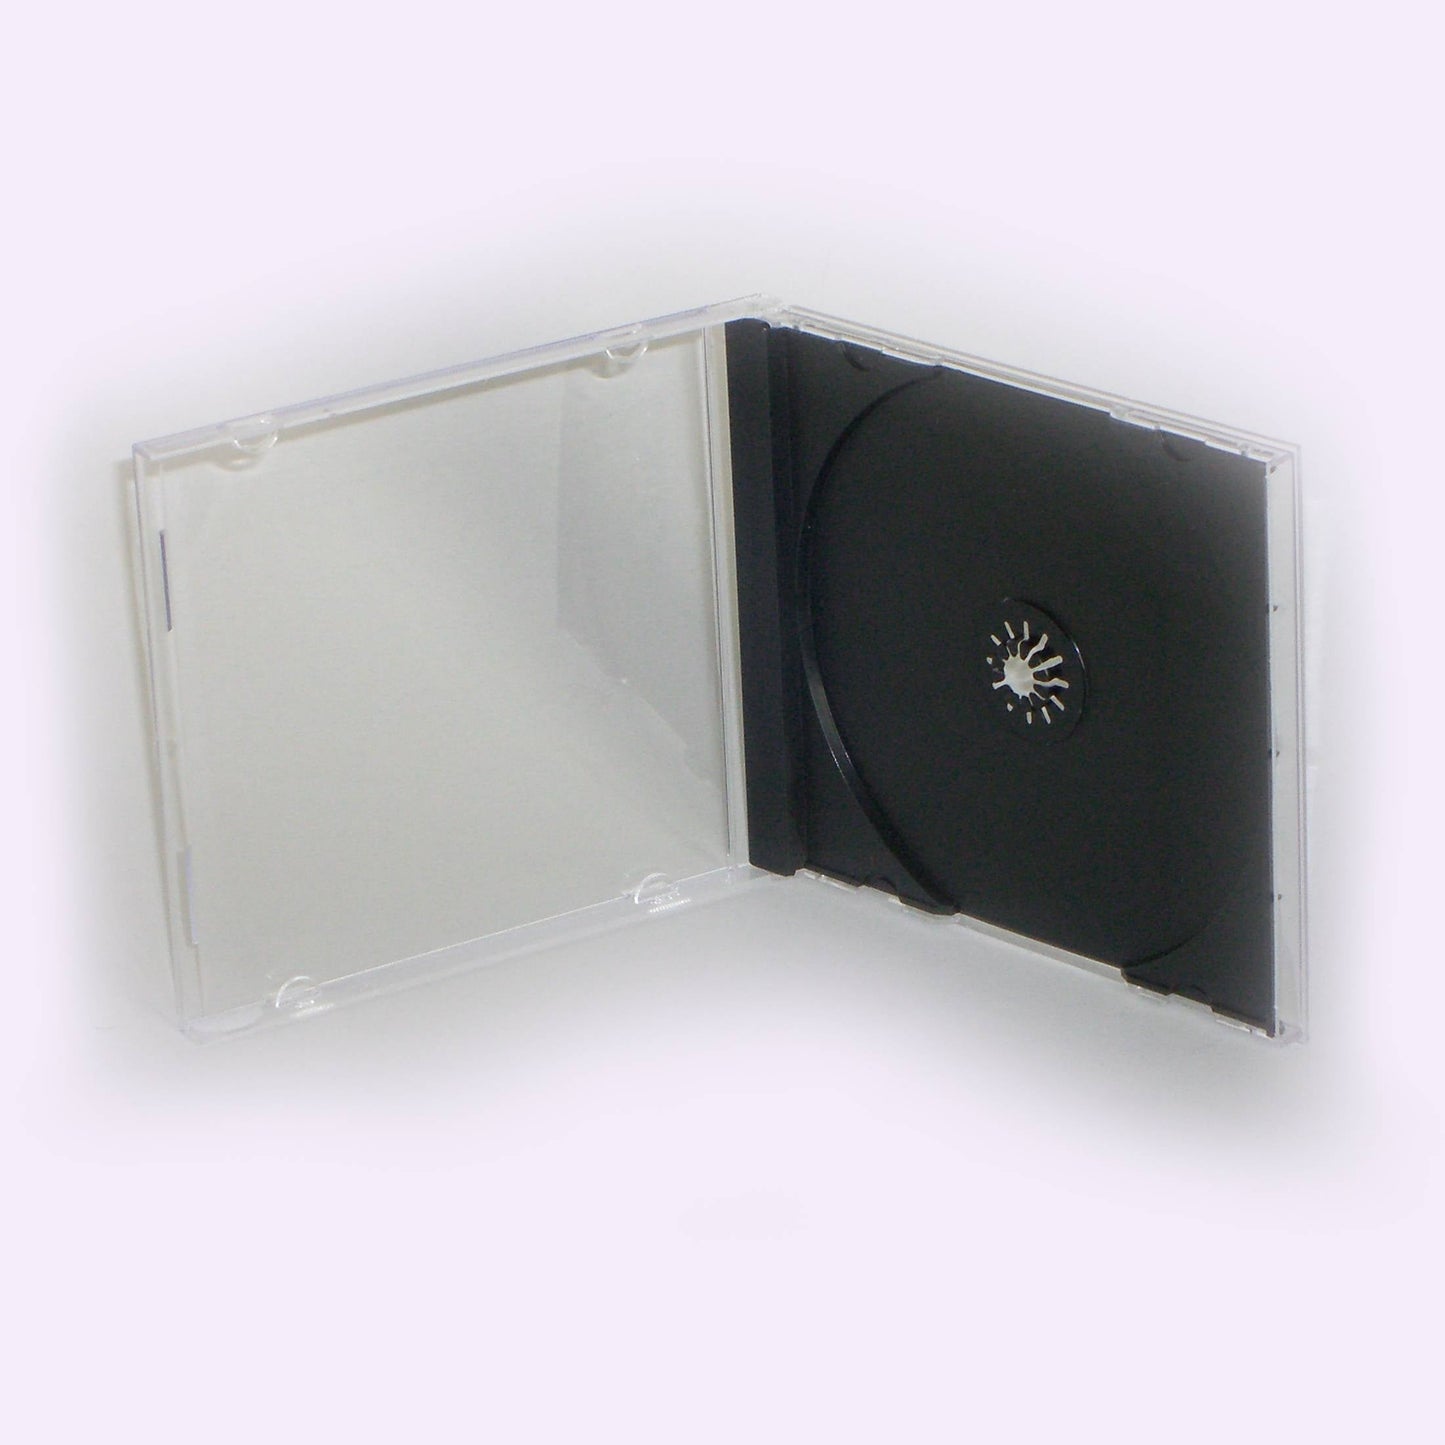 1000 Boitiers JEWEL BOX 1 CD centreur noir